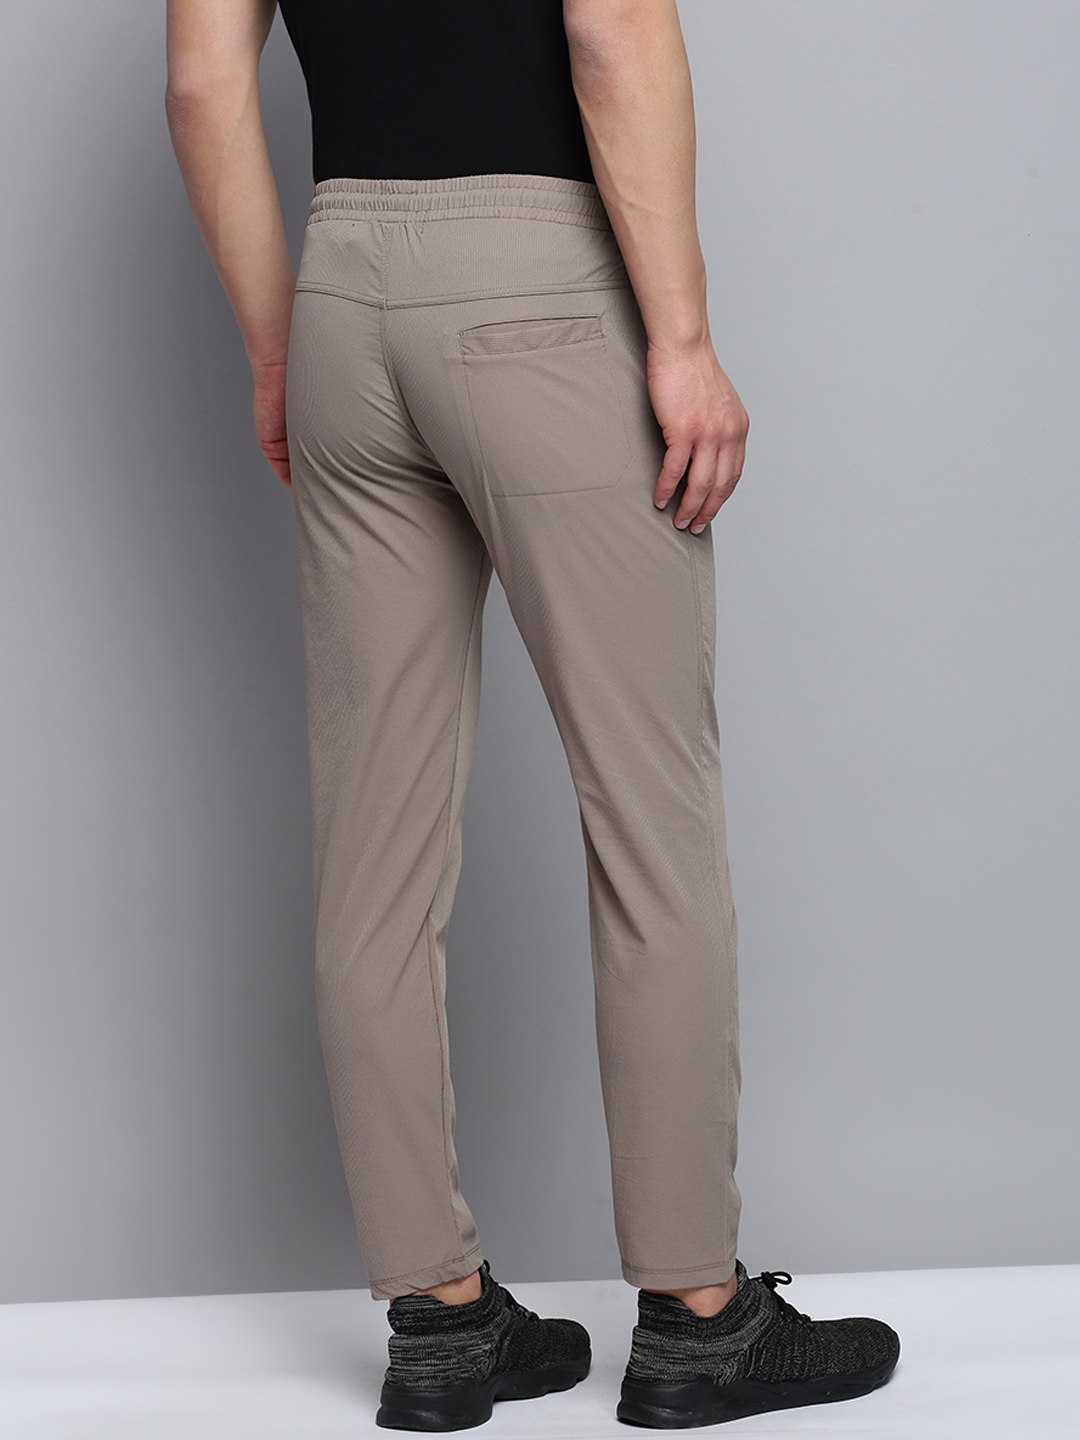 Showoff | SHOWOFF Men's Self Design Grey Regular Fit Regular Track Pant 2